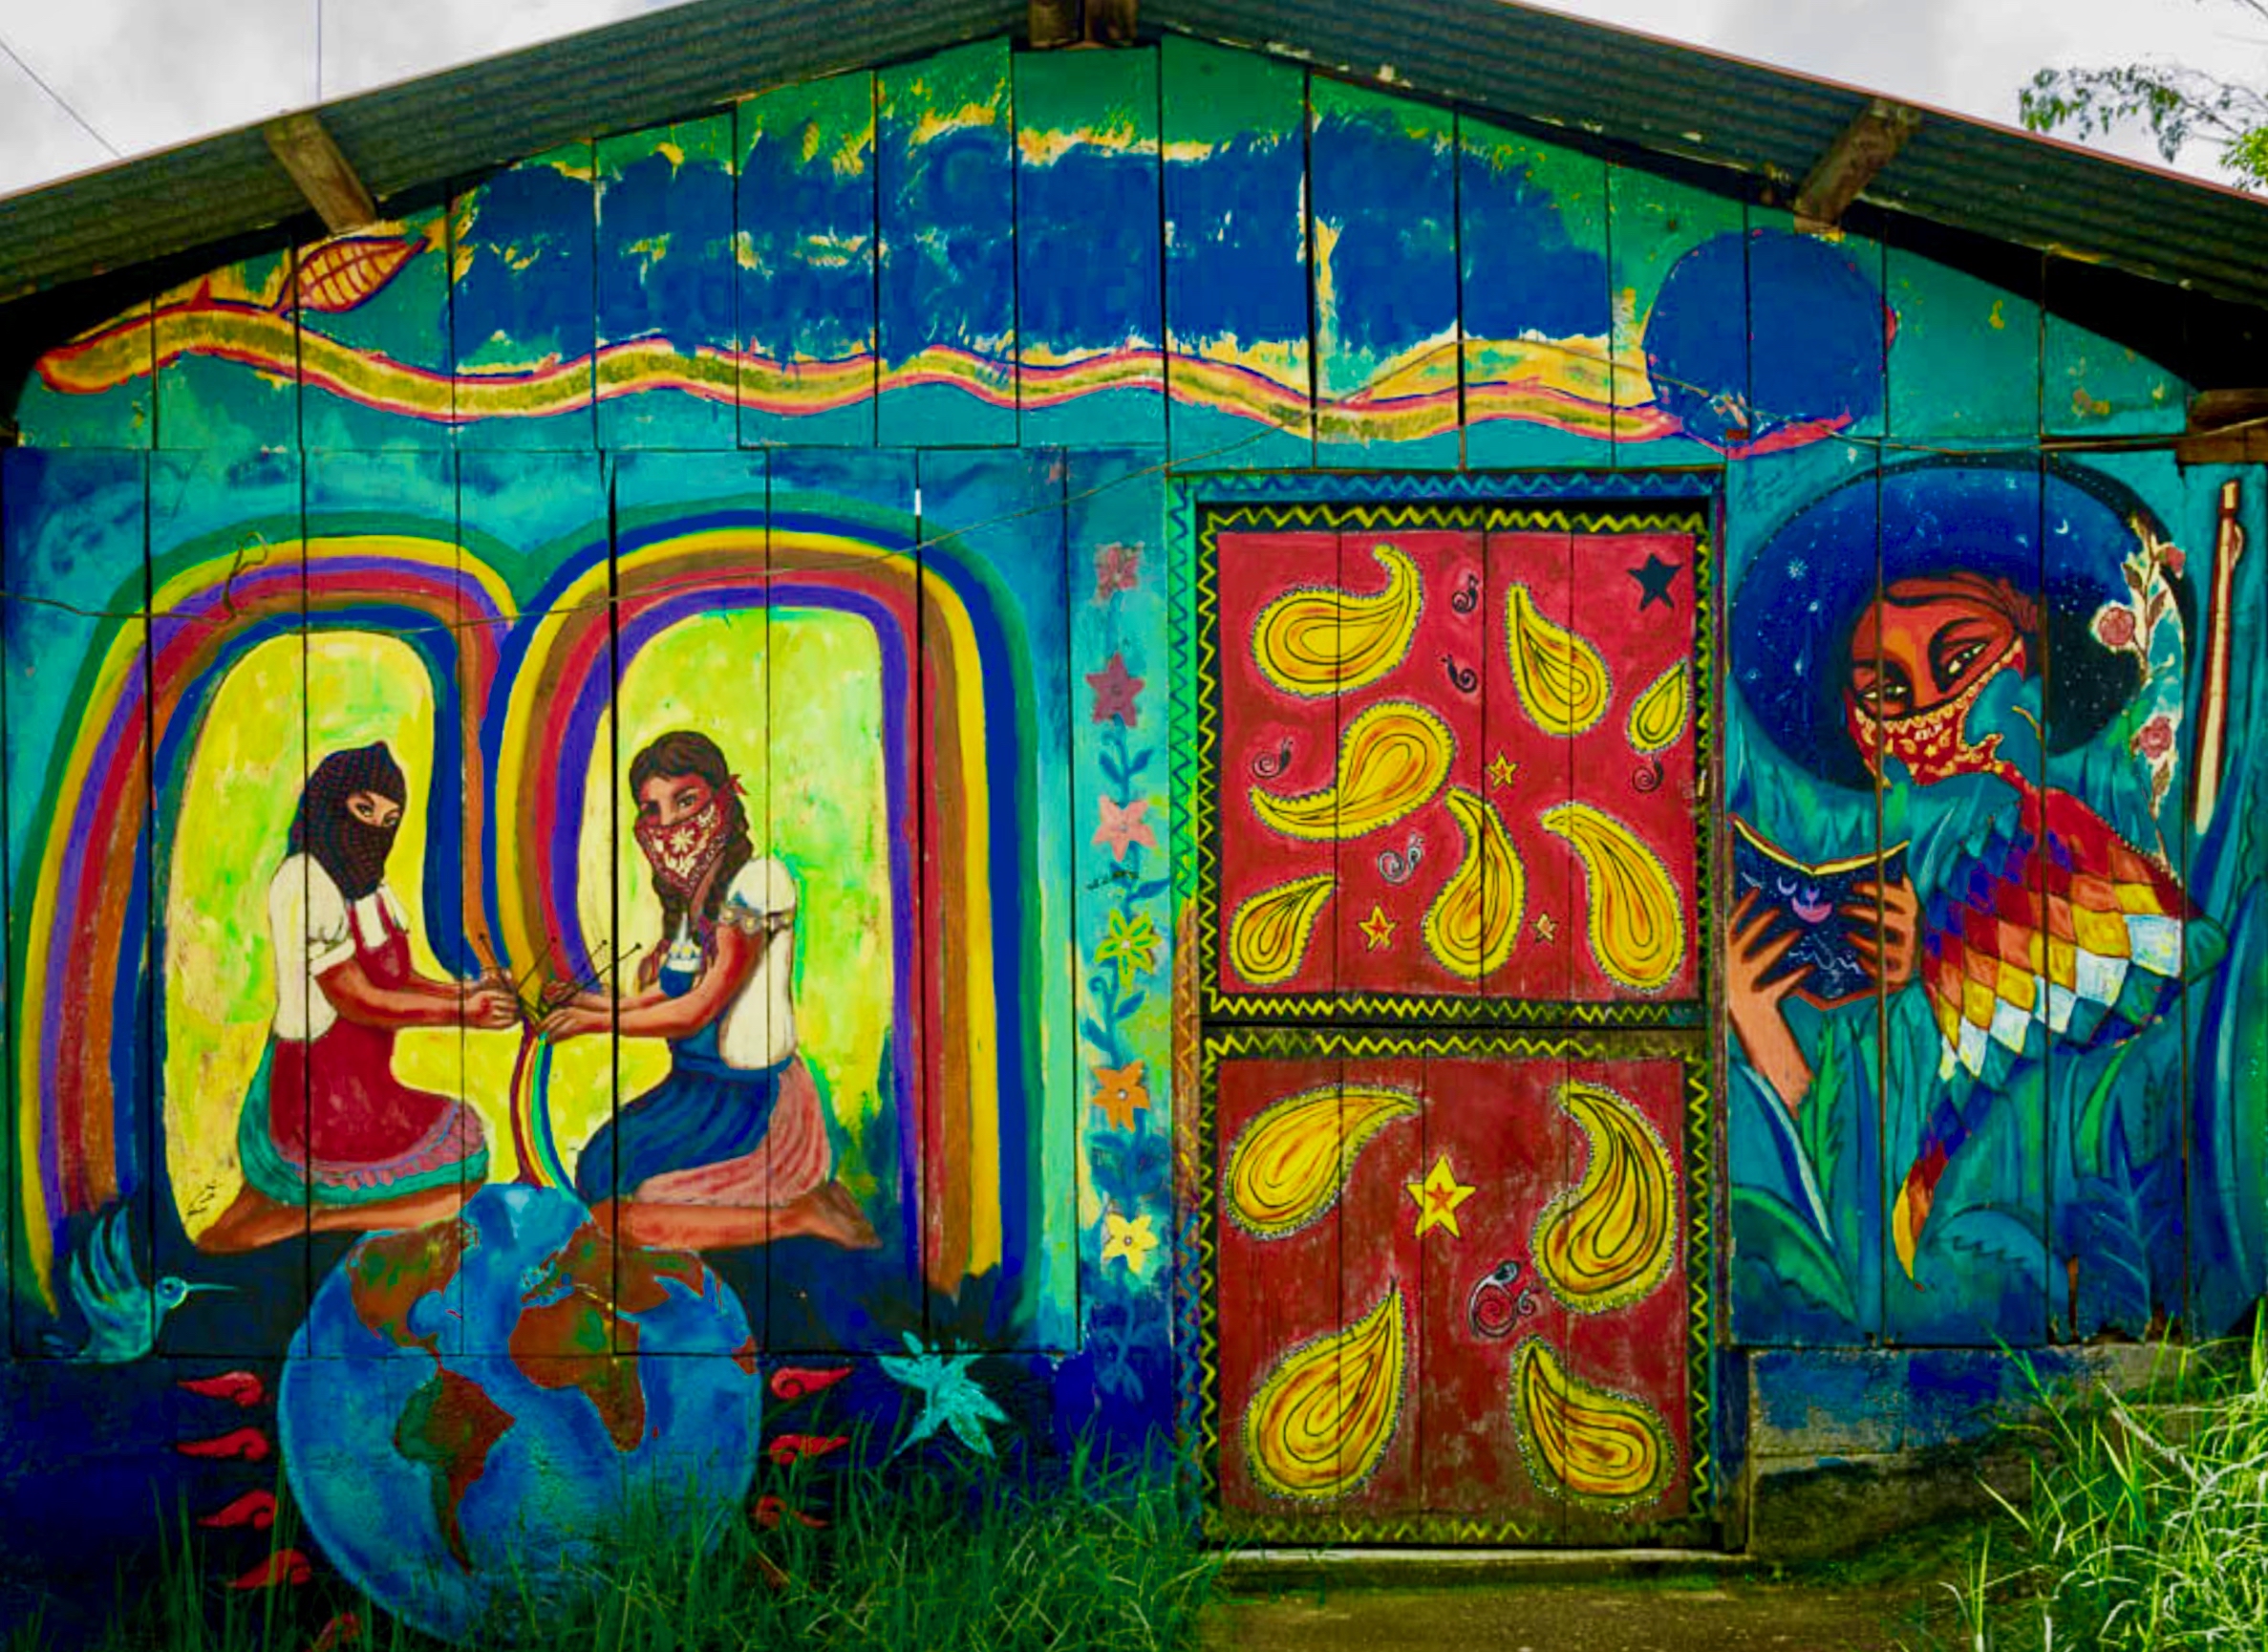 'Un Mundo Donde Quepan Muchos Mundos' and 'Preguntando Caminamos' (mural, Zapatista territory)